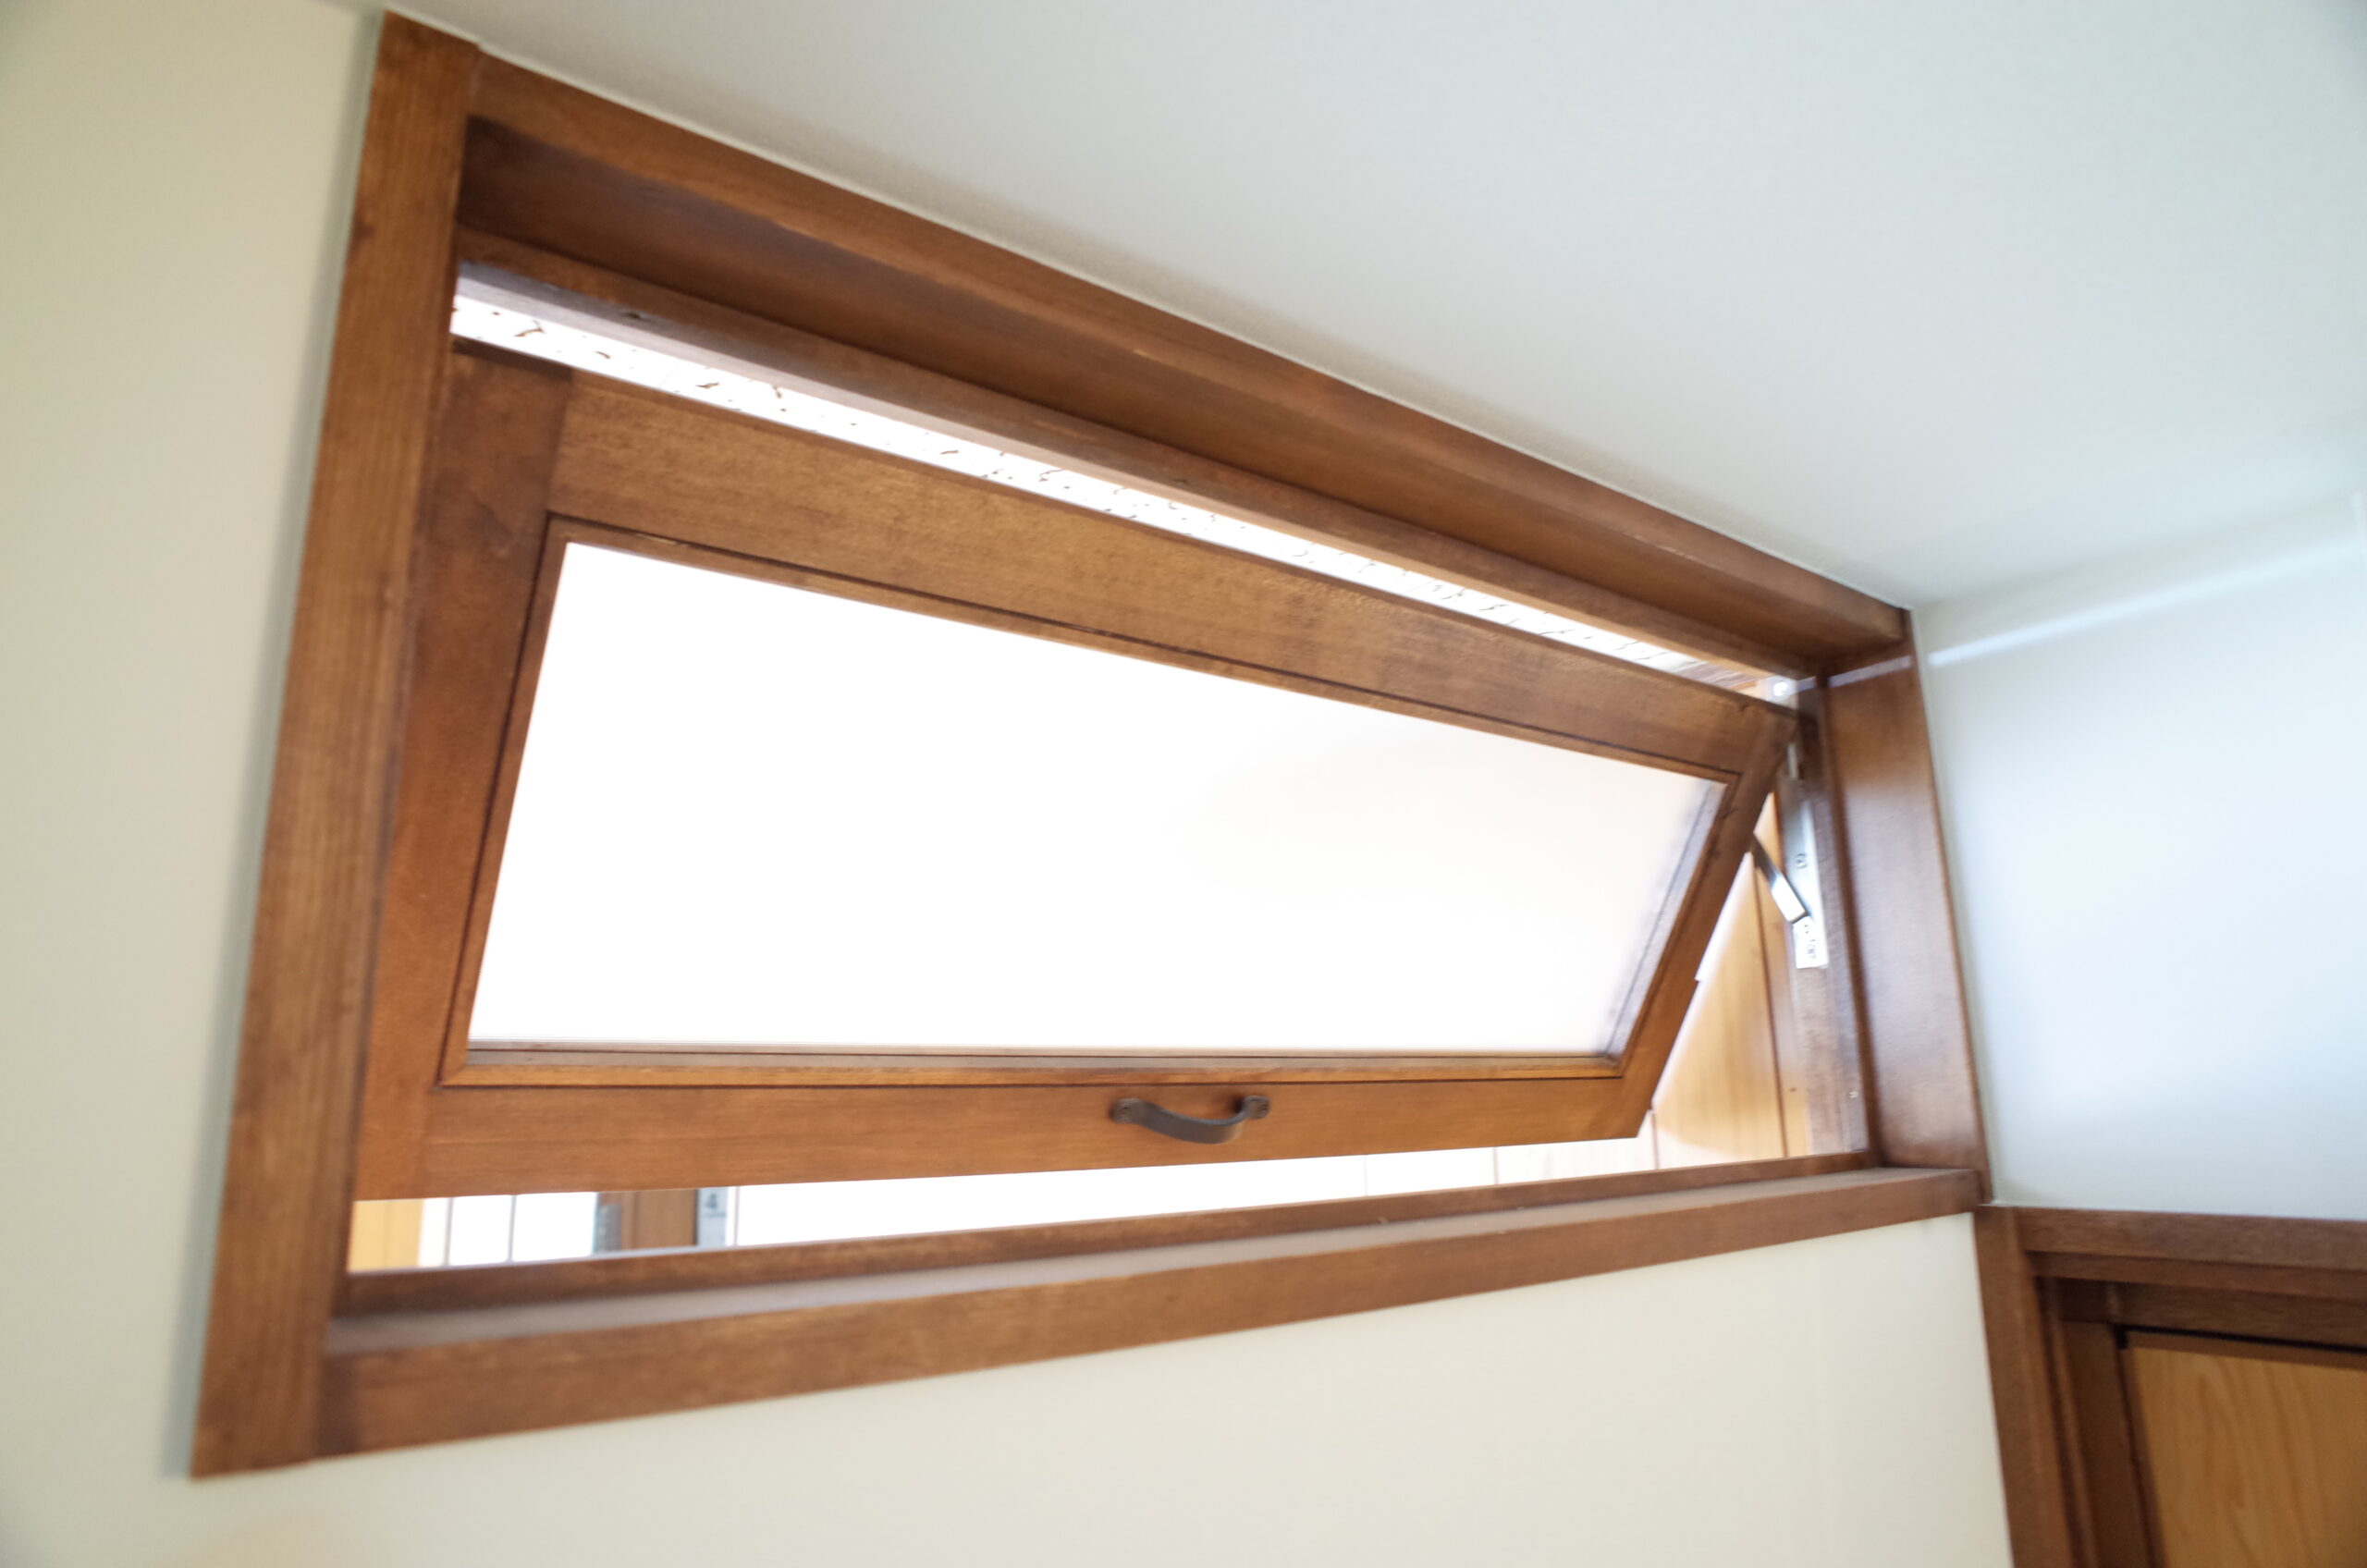 木枠のホイトコ窓、木枠の滑り出し窓、ホイトコ金具を使用、造作窓、オーダーメイド製作の窓